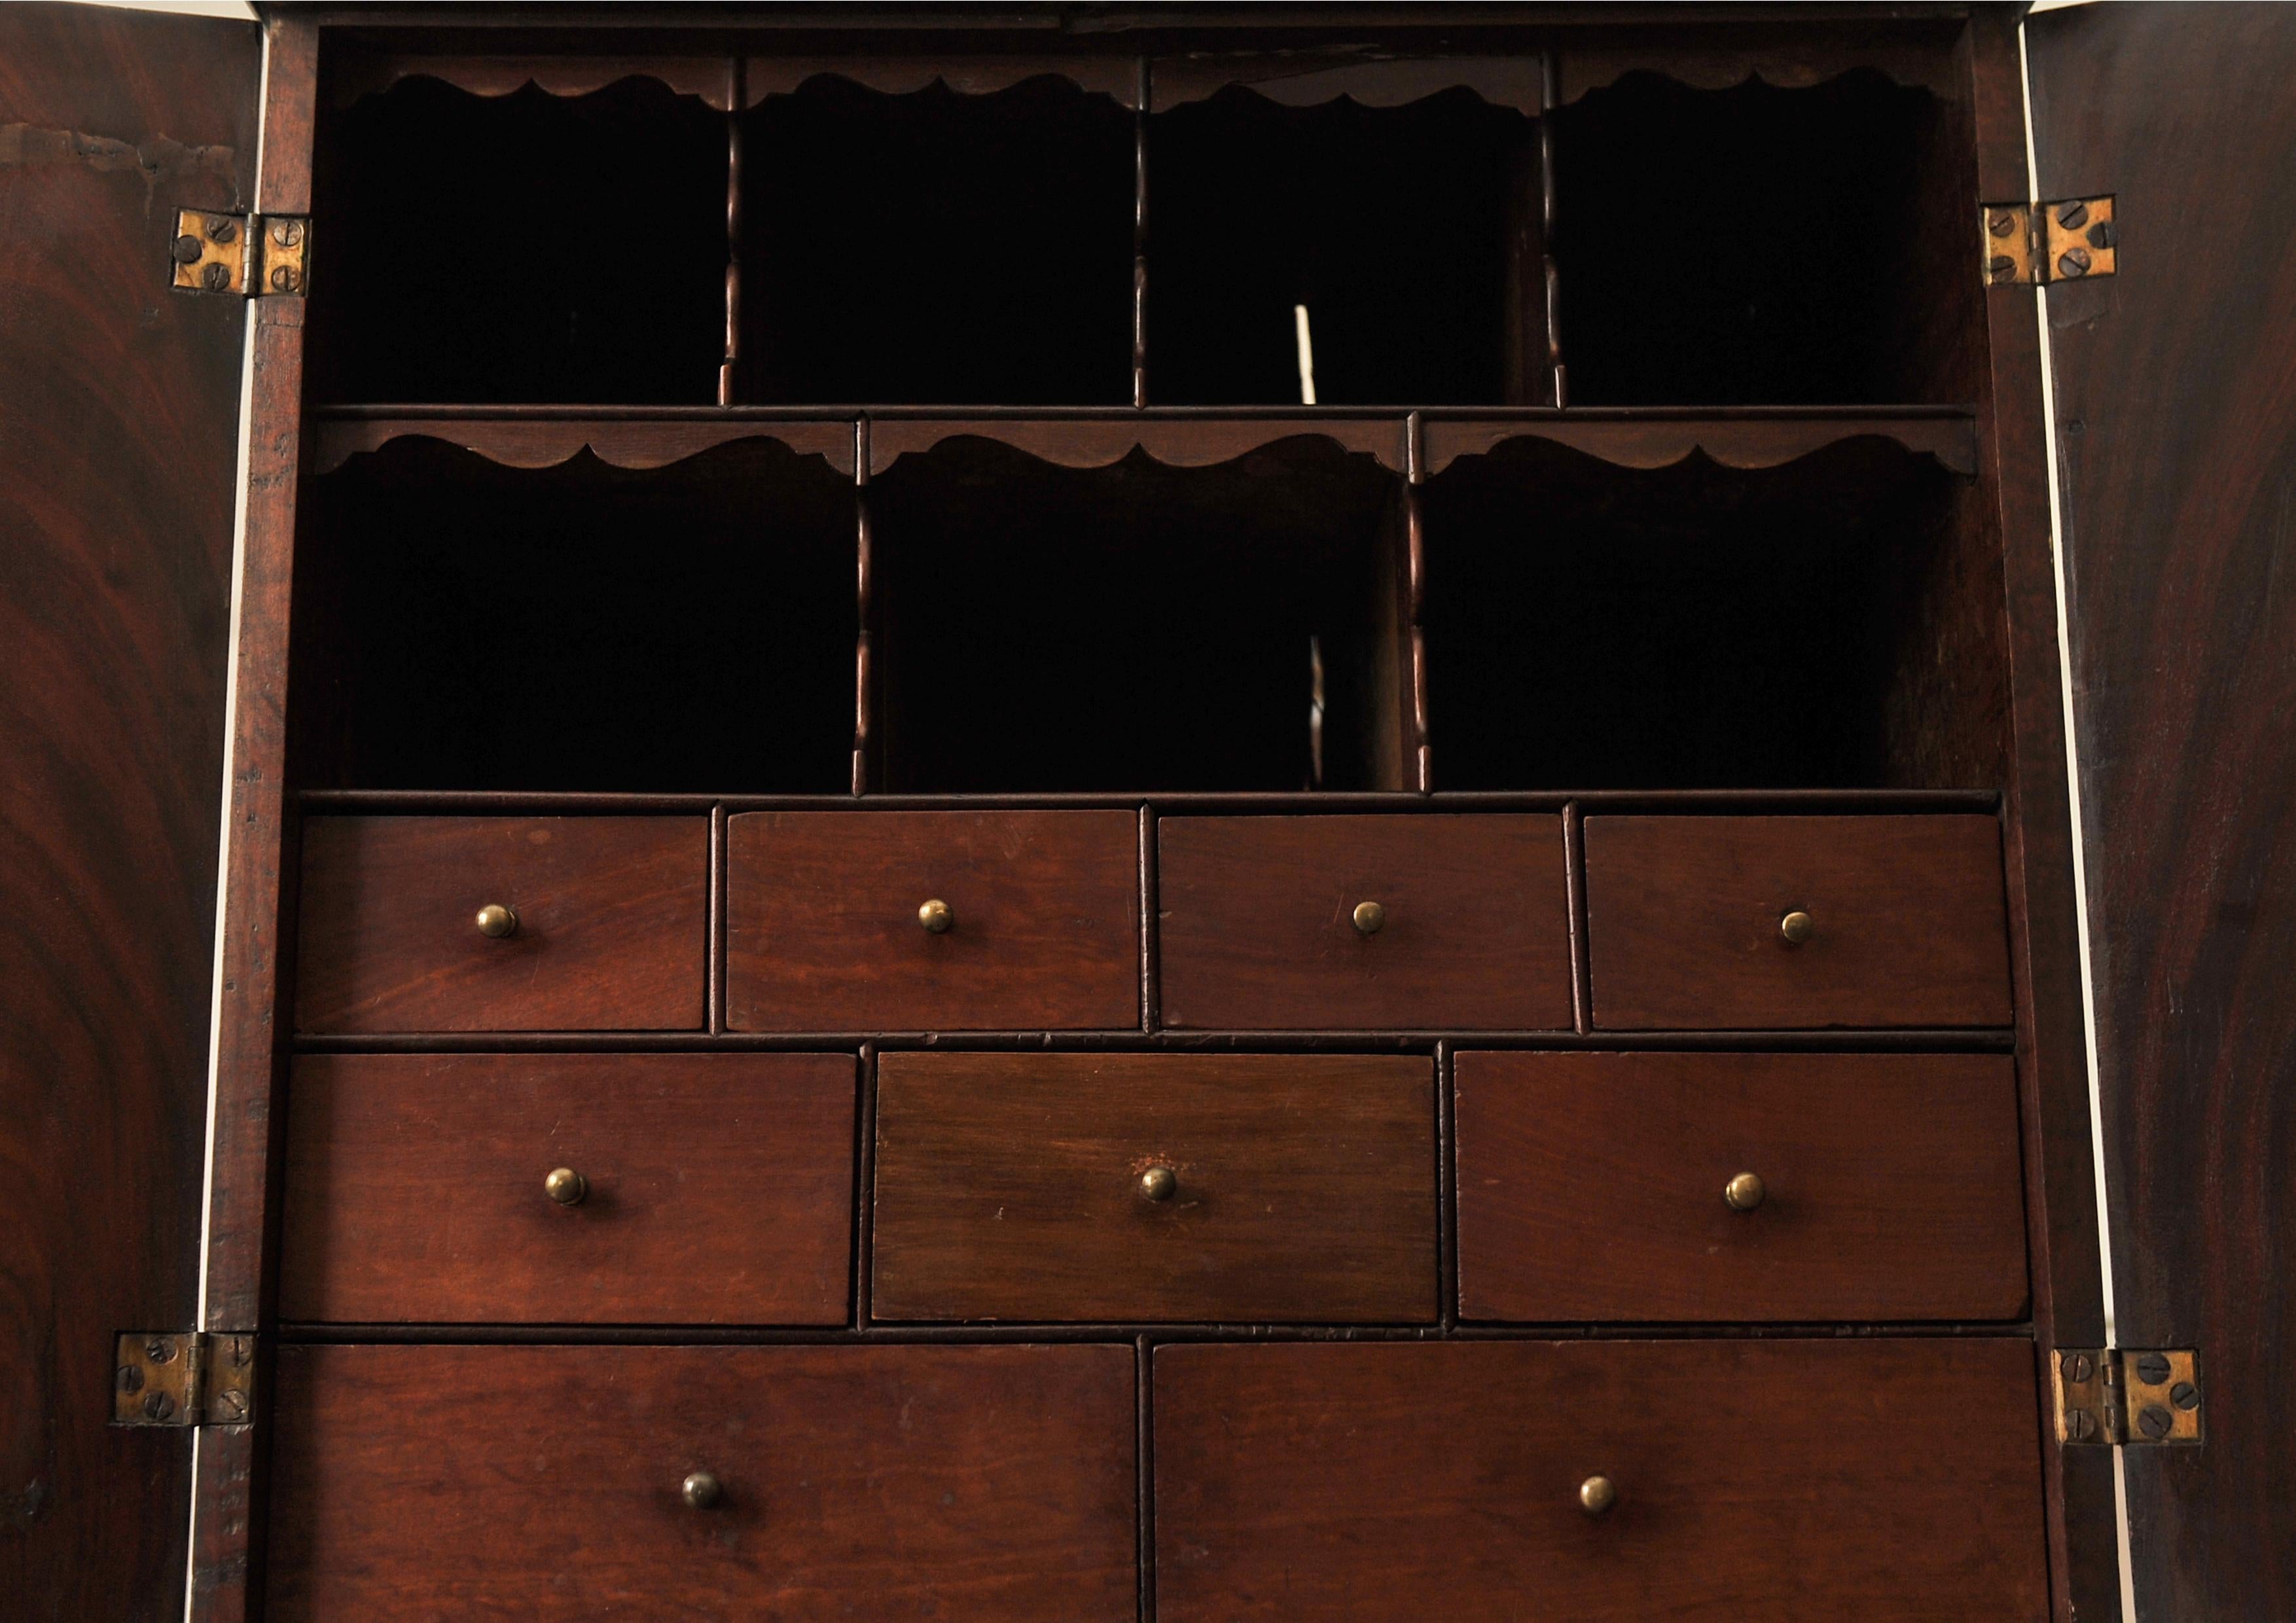 Eine seltene 18. Jahrhundert Mahagoni & Messing Zwei-Tür-Tabelle Kabinett mit Taubenlöchern und Schubladen ausgestattet.

Handgefertigte Qualitätsschreinerarbeit mit jeder Schublade aus handgefertigten Schwalbenschwänzen.

Der Artikel wird mit einem